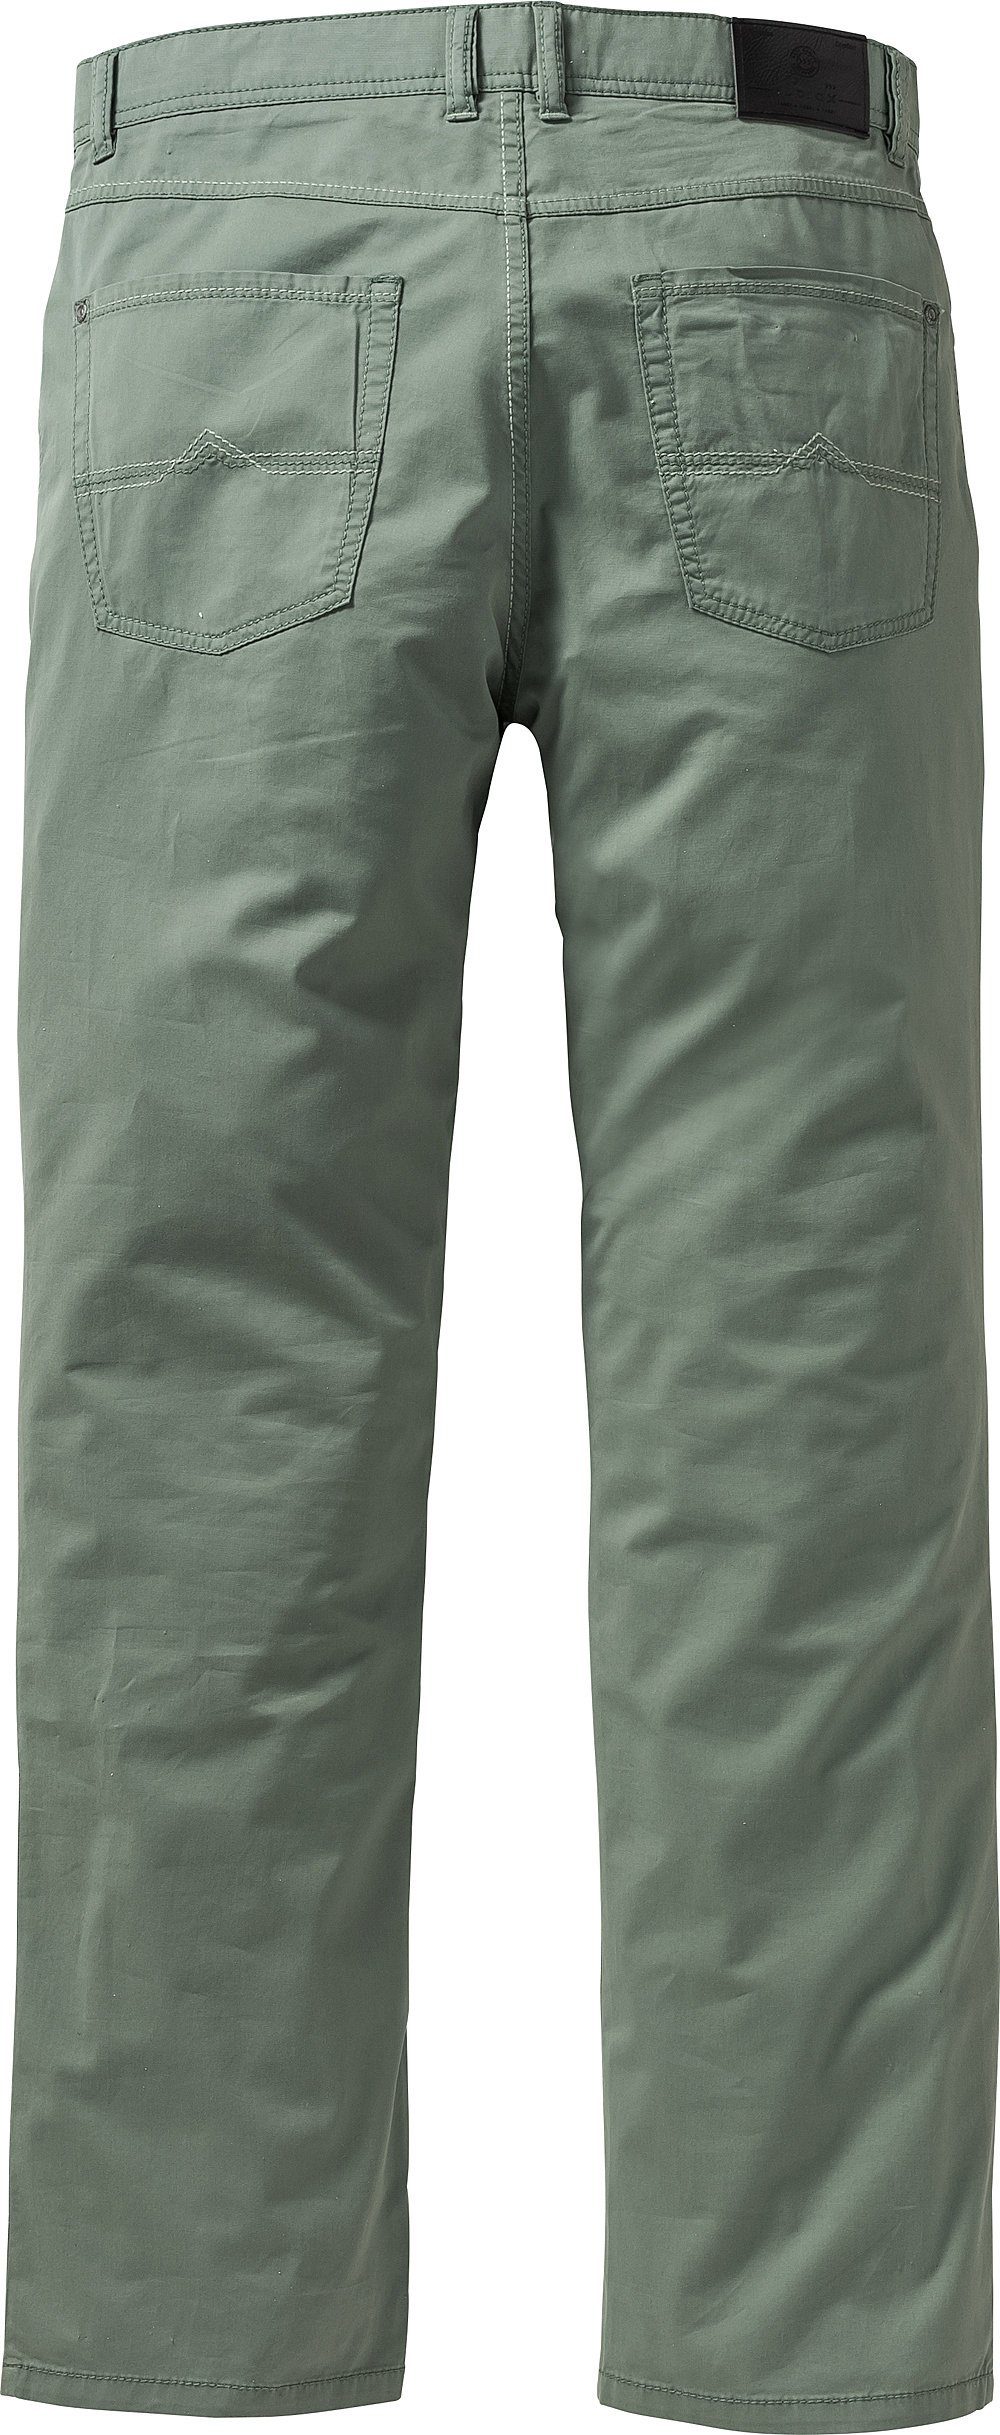 Suprax 5-Pocket-Hose weich, grün leicht und luftig sensationell